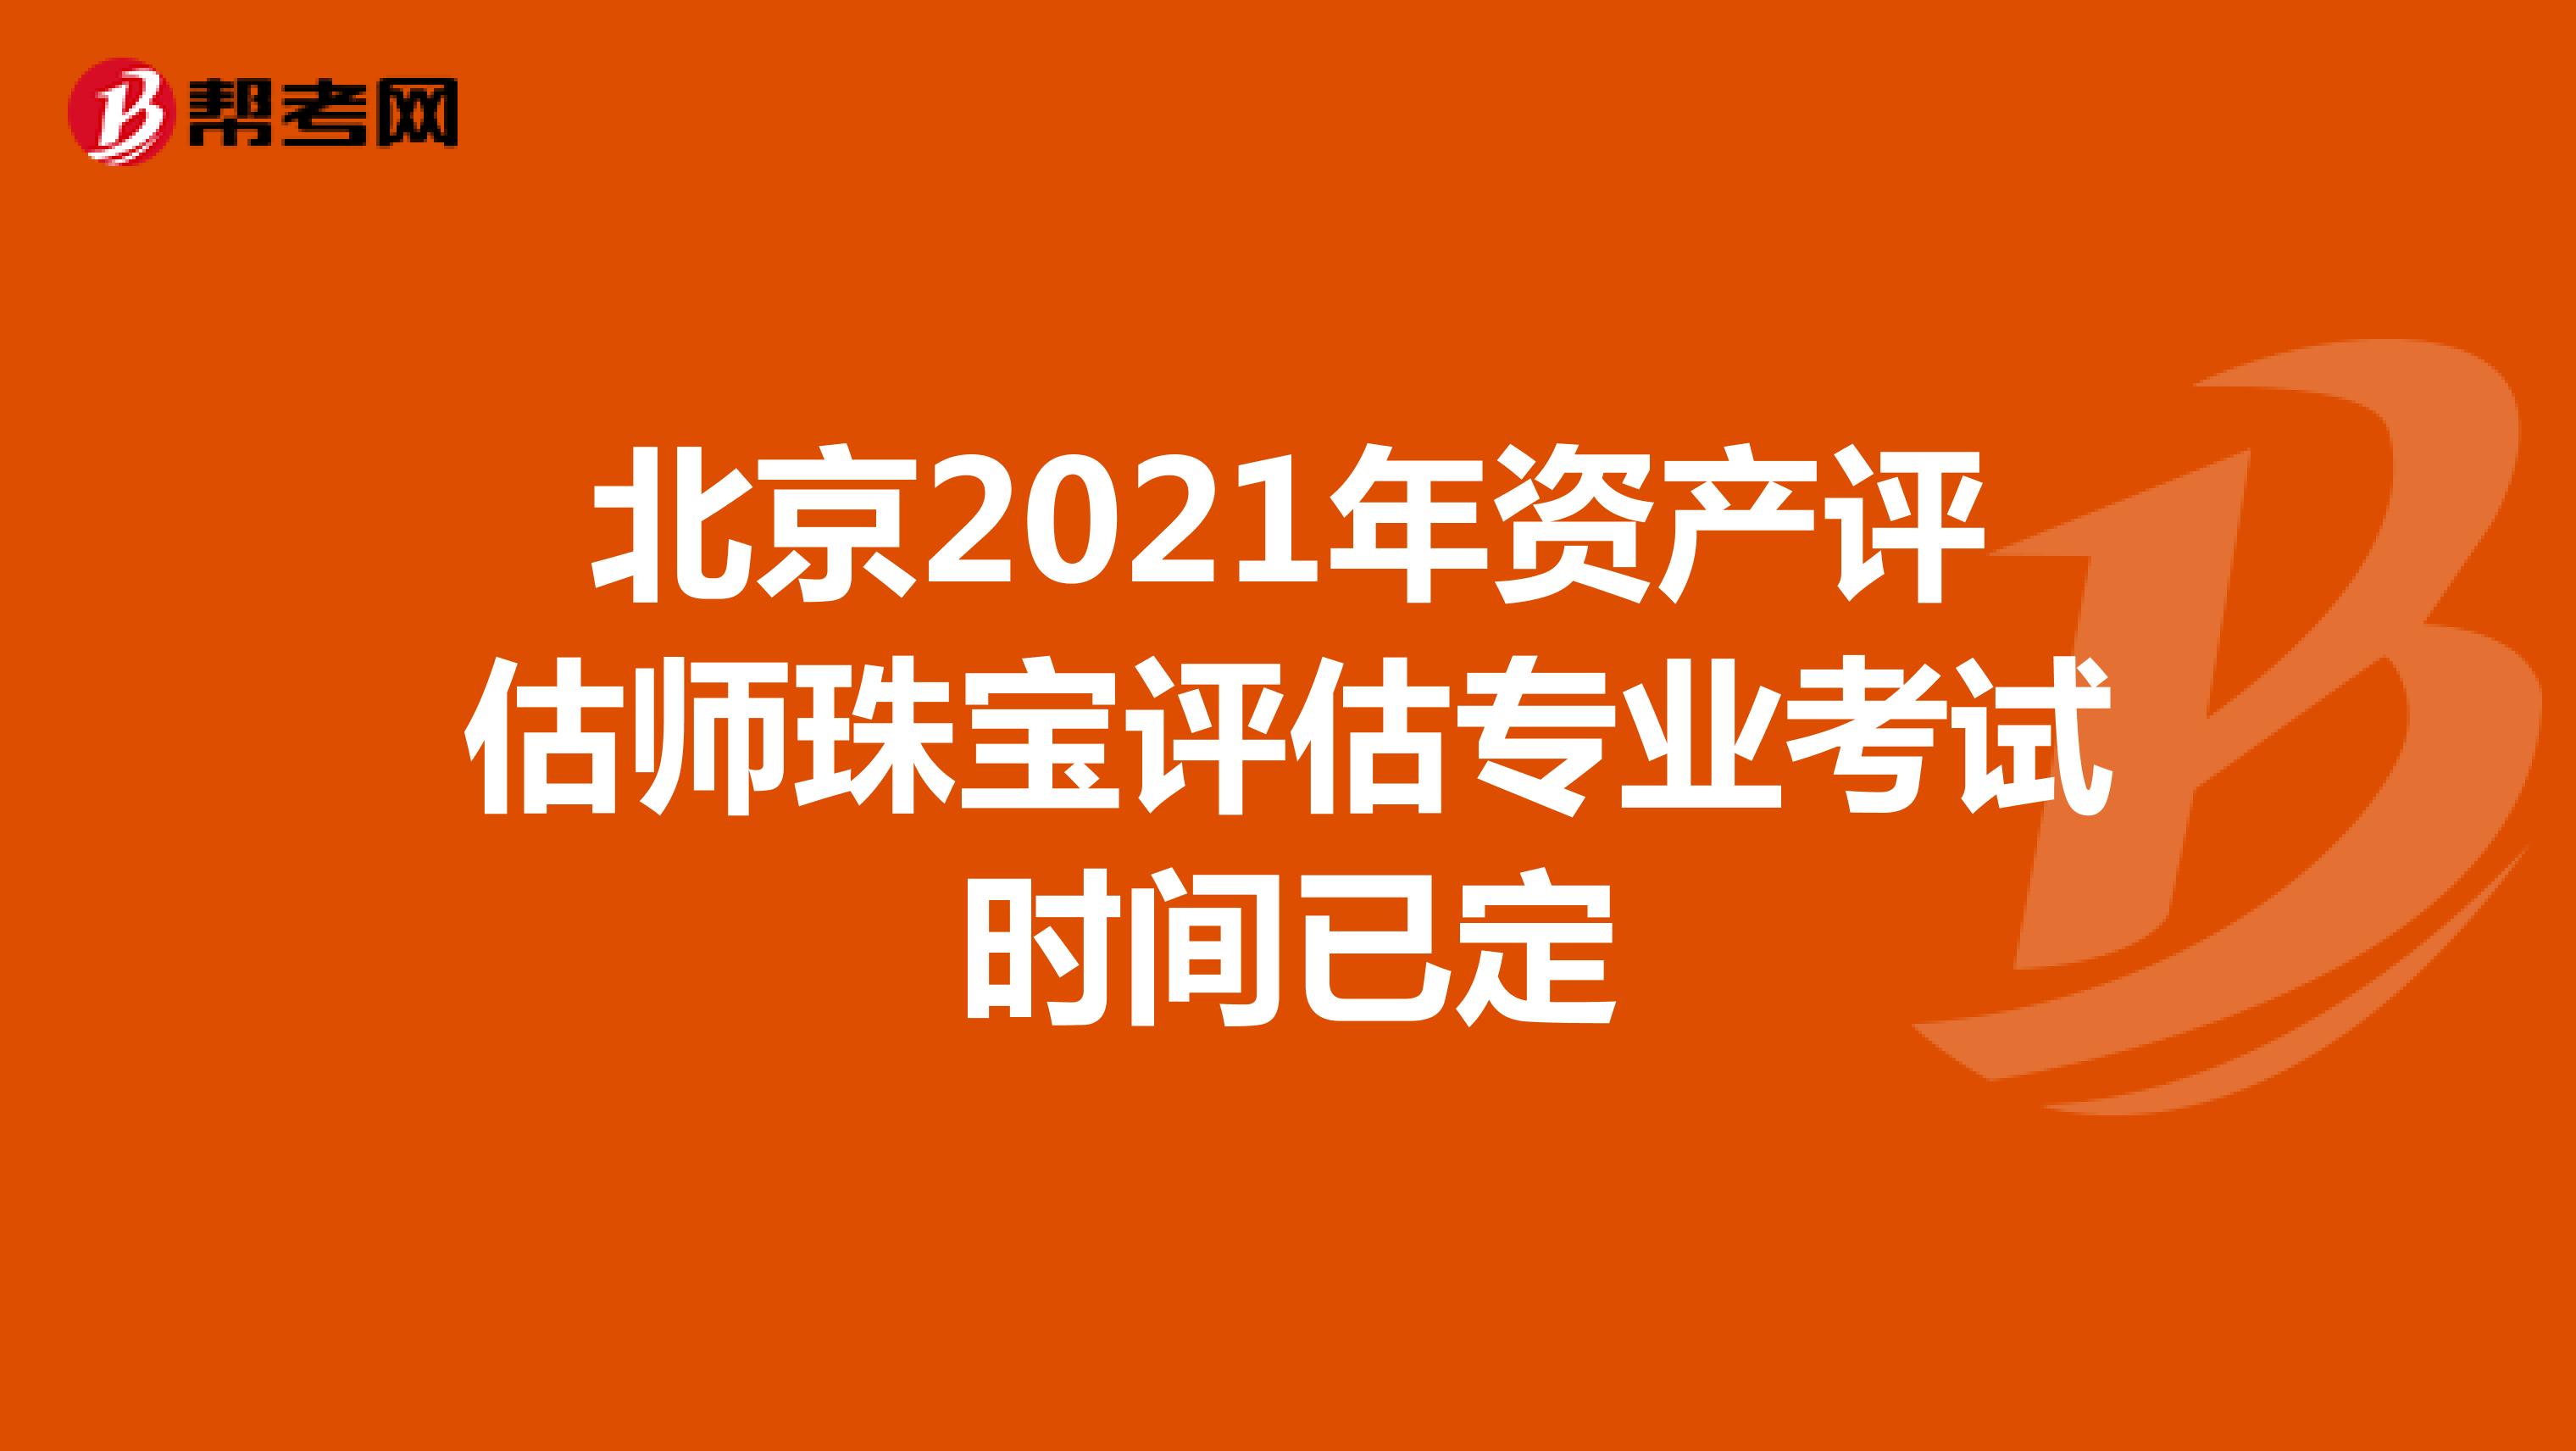 北京2021年资产评估师珠宝评估专业考试时间已定